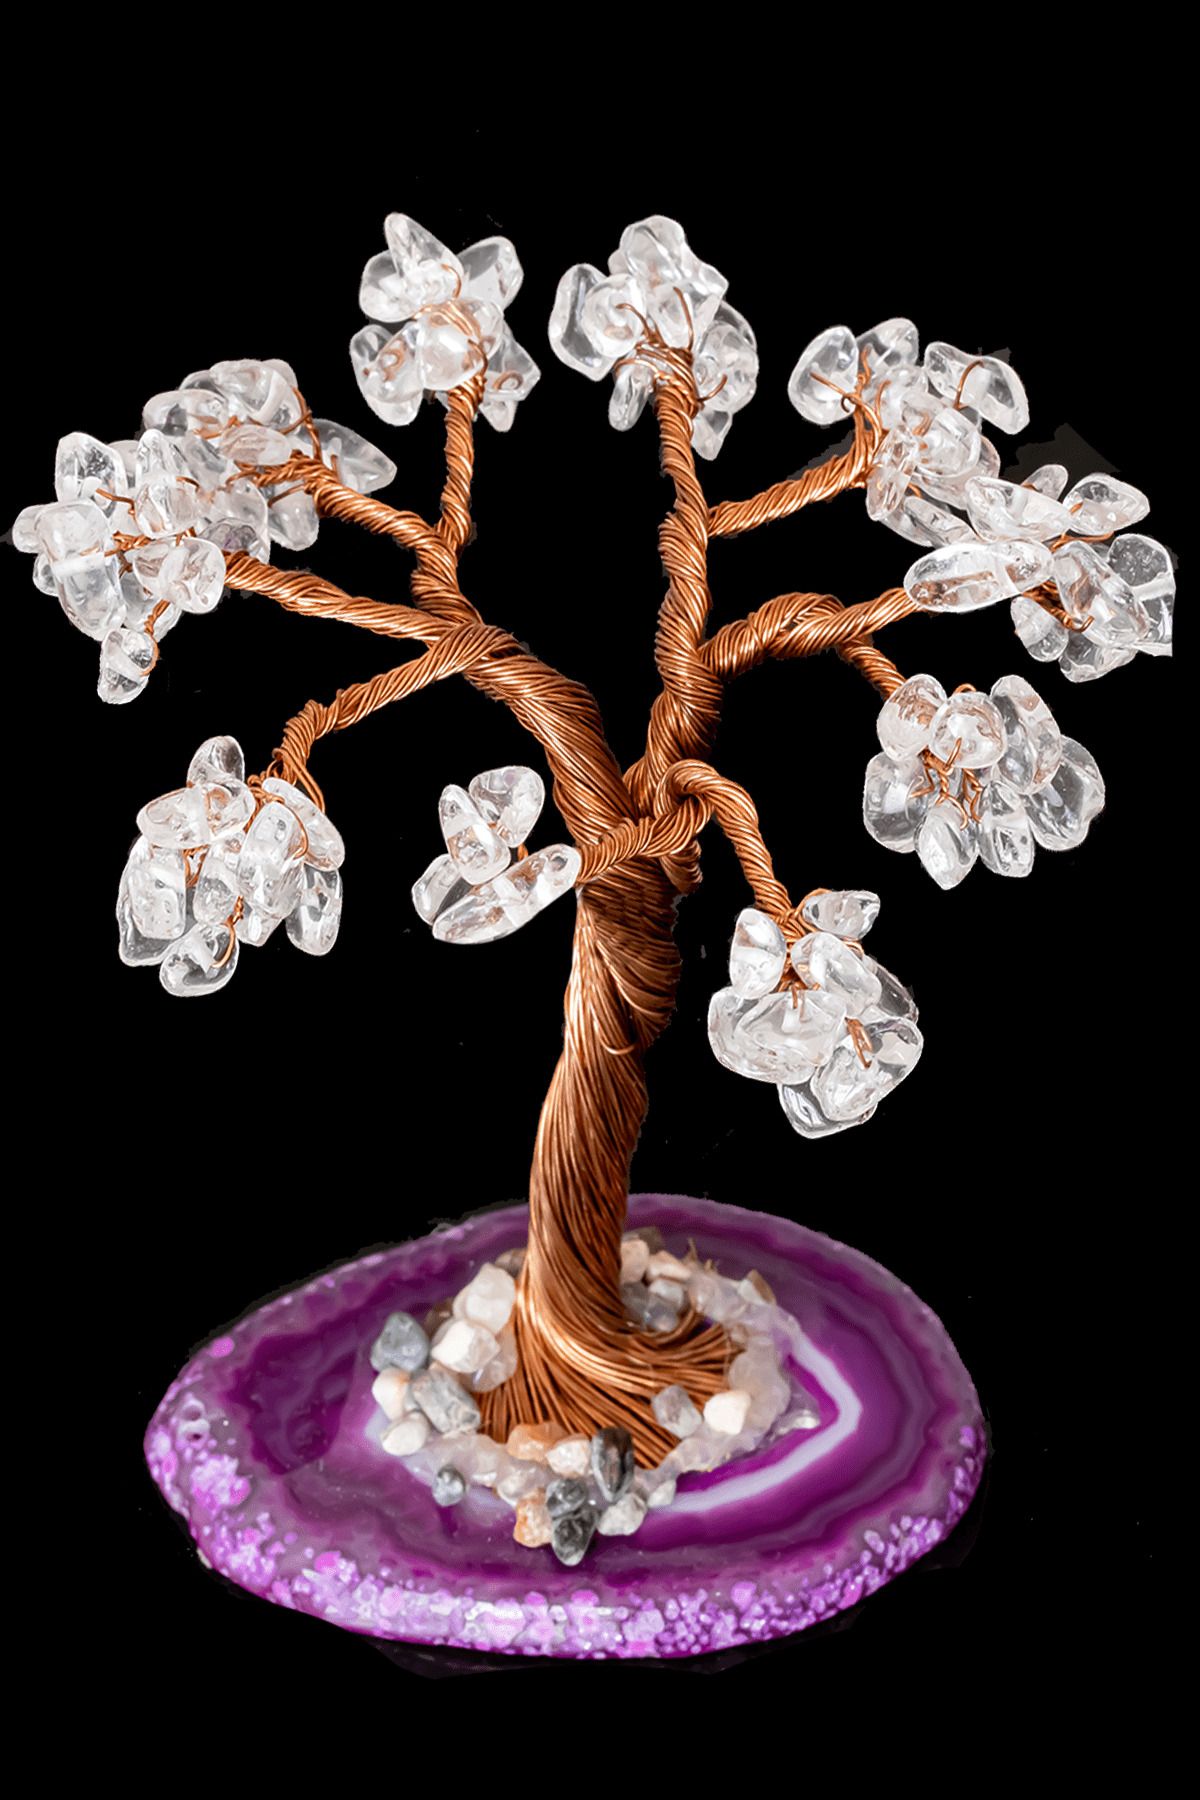 Tesbih Atölyesi Sertifikalı Gerçek Kristal Kuvars Taşı Ağaç - Akik Plakalı